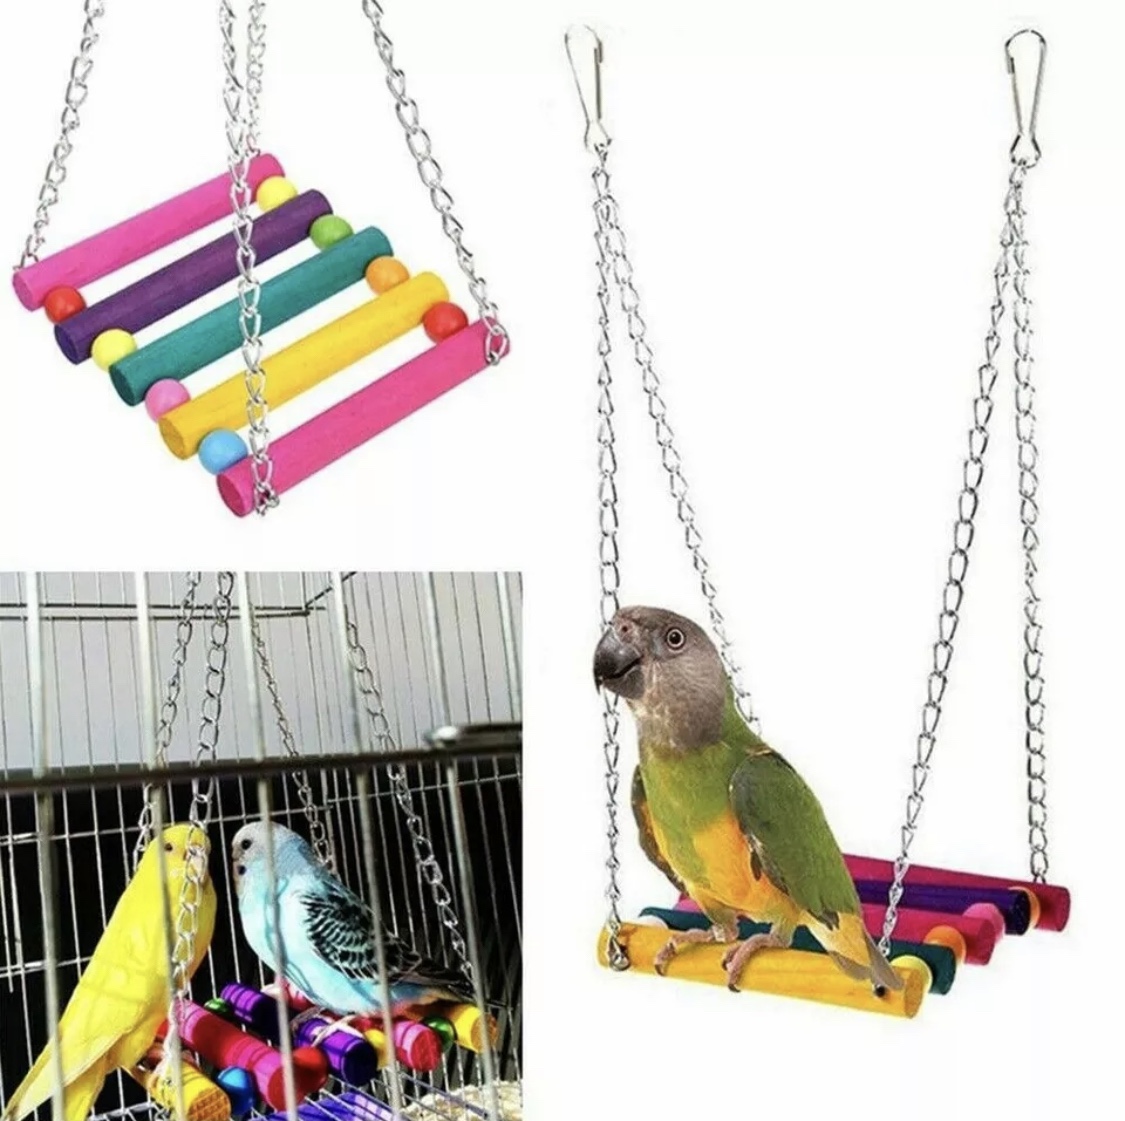 bird toy swings, bridge, hanging bells,